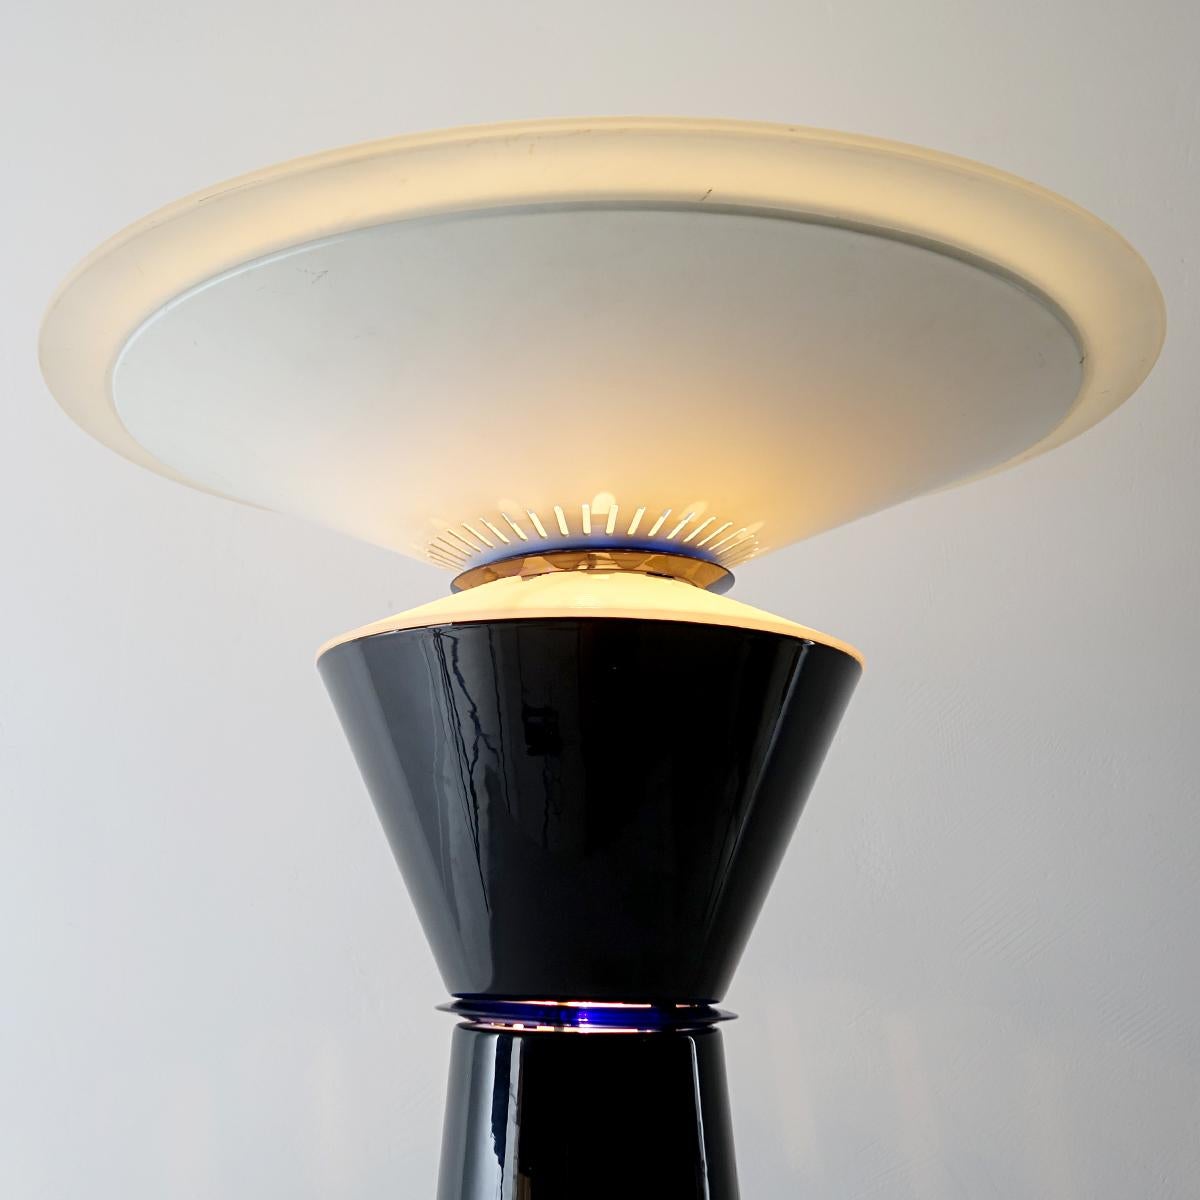 Italian Postmodern Table Lamp Giada Designed by Pier Giuseppe Ramella for Arteluce